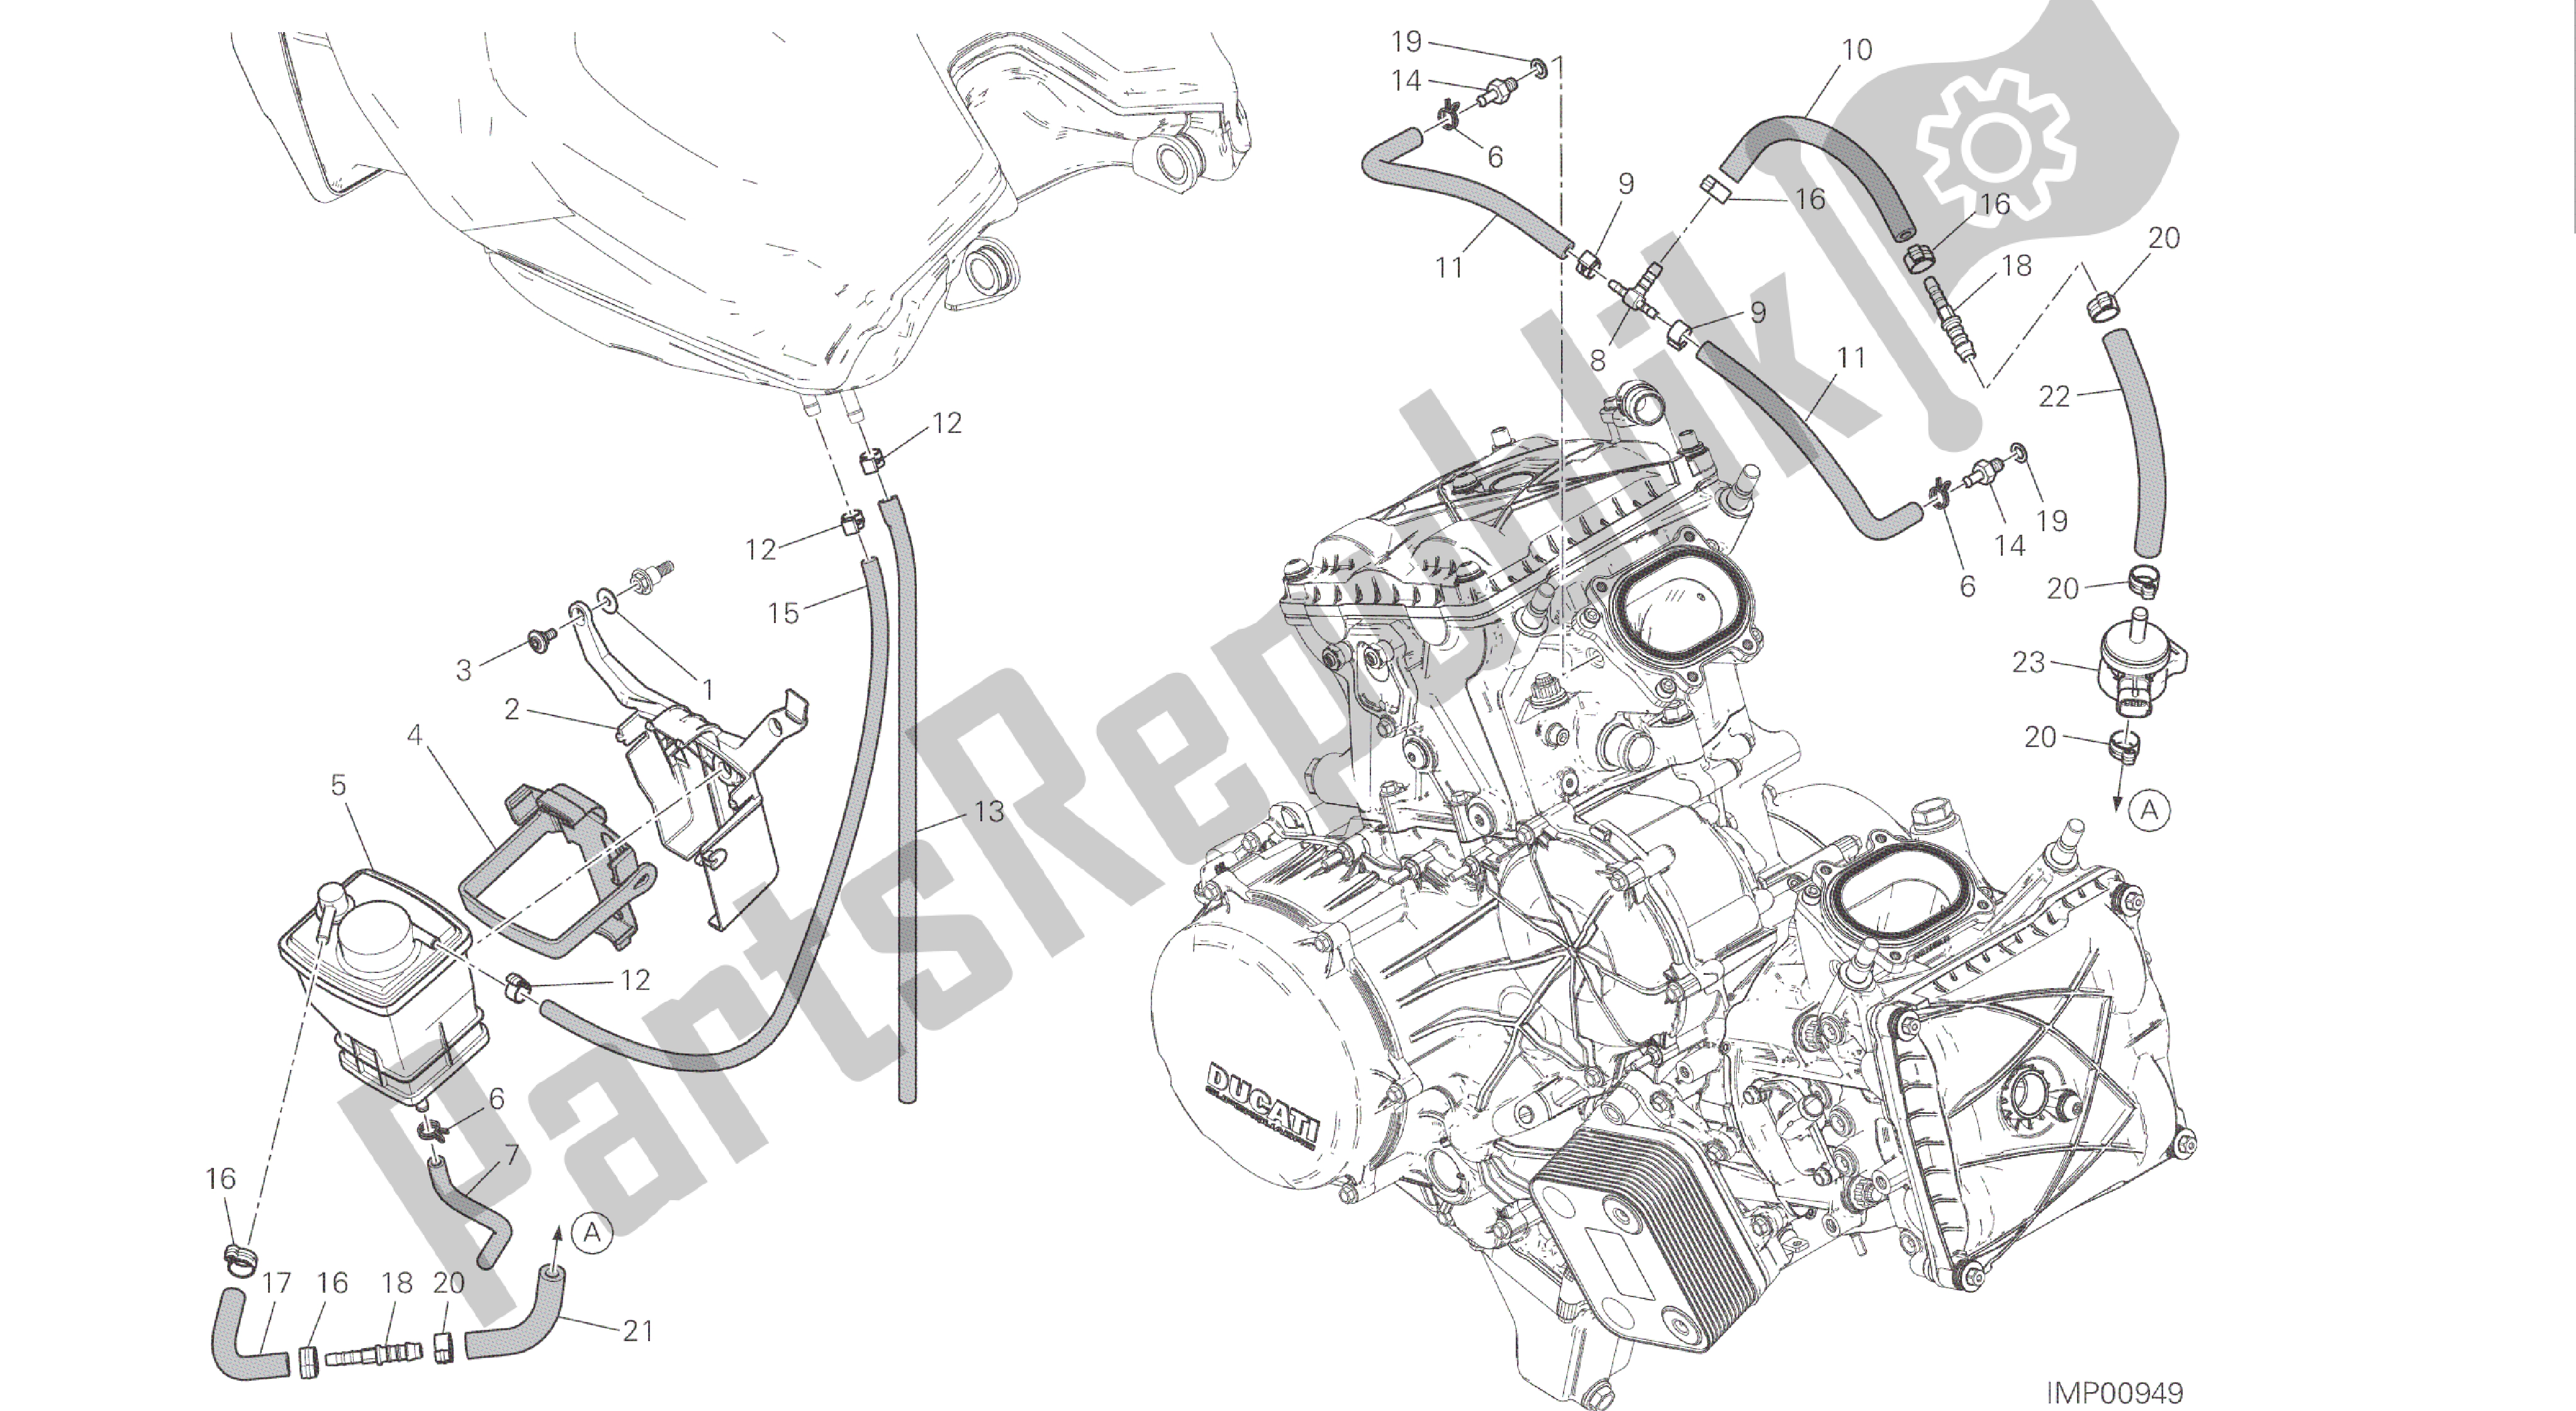 Todas las partes para Dibujo 035 - Filtro De Recipiente [mod: 1299s; Xst: Twn] Marco De Grupo de Ducati Panigale S ABS 1299 2016